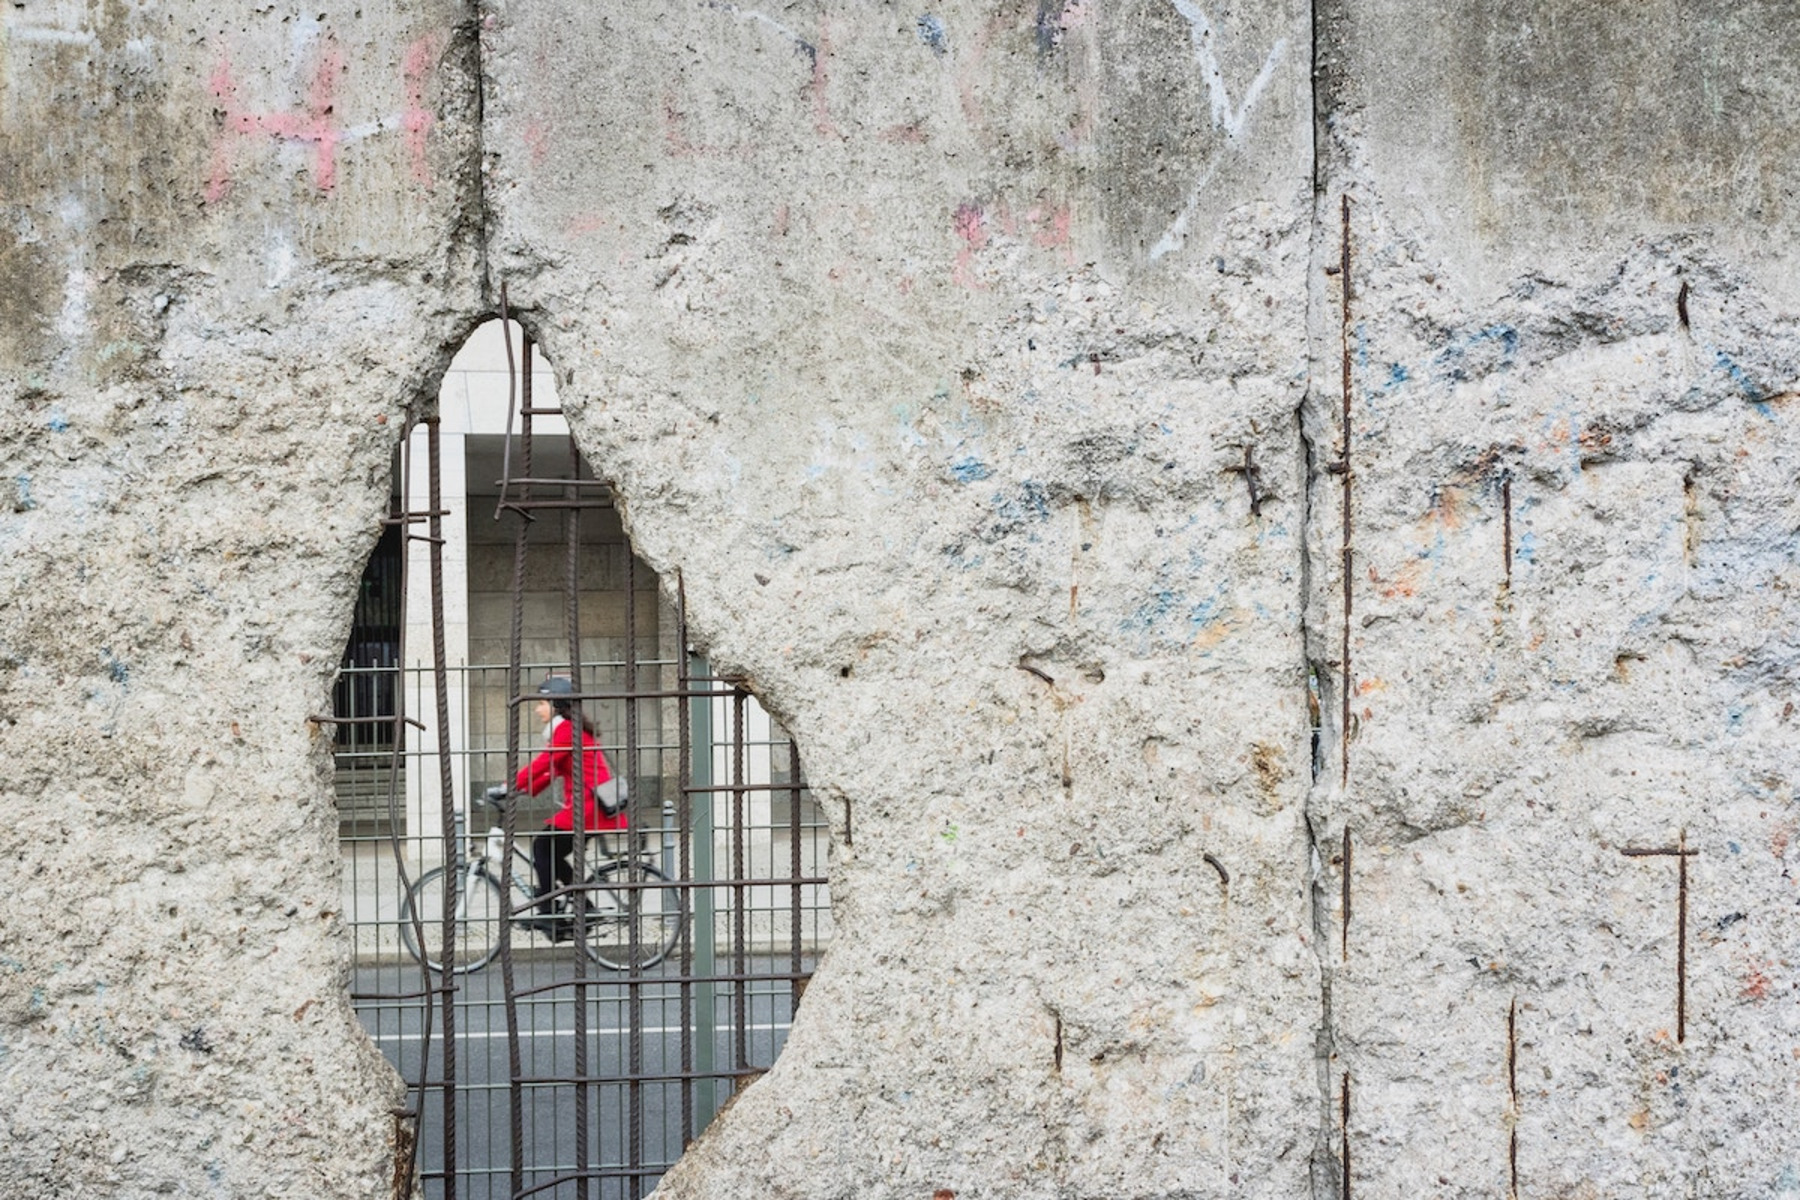 Durch ein Loch in der Mauer sieht man eine Person auf einem Fahrrad.